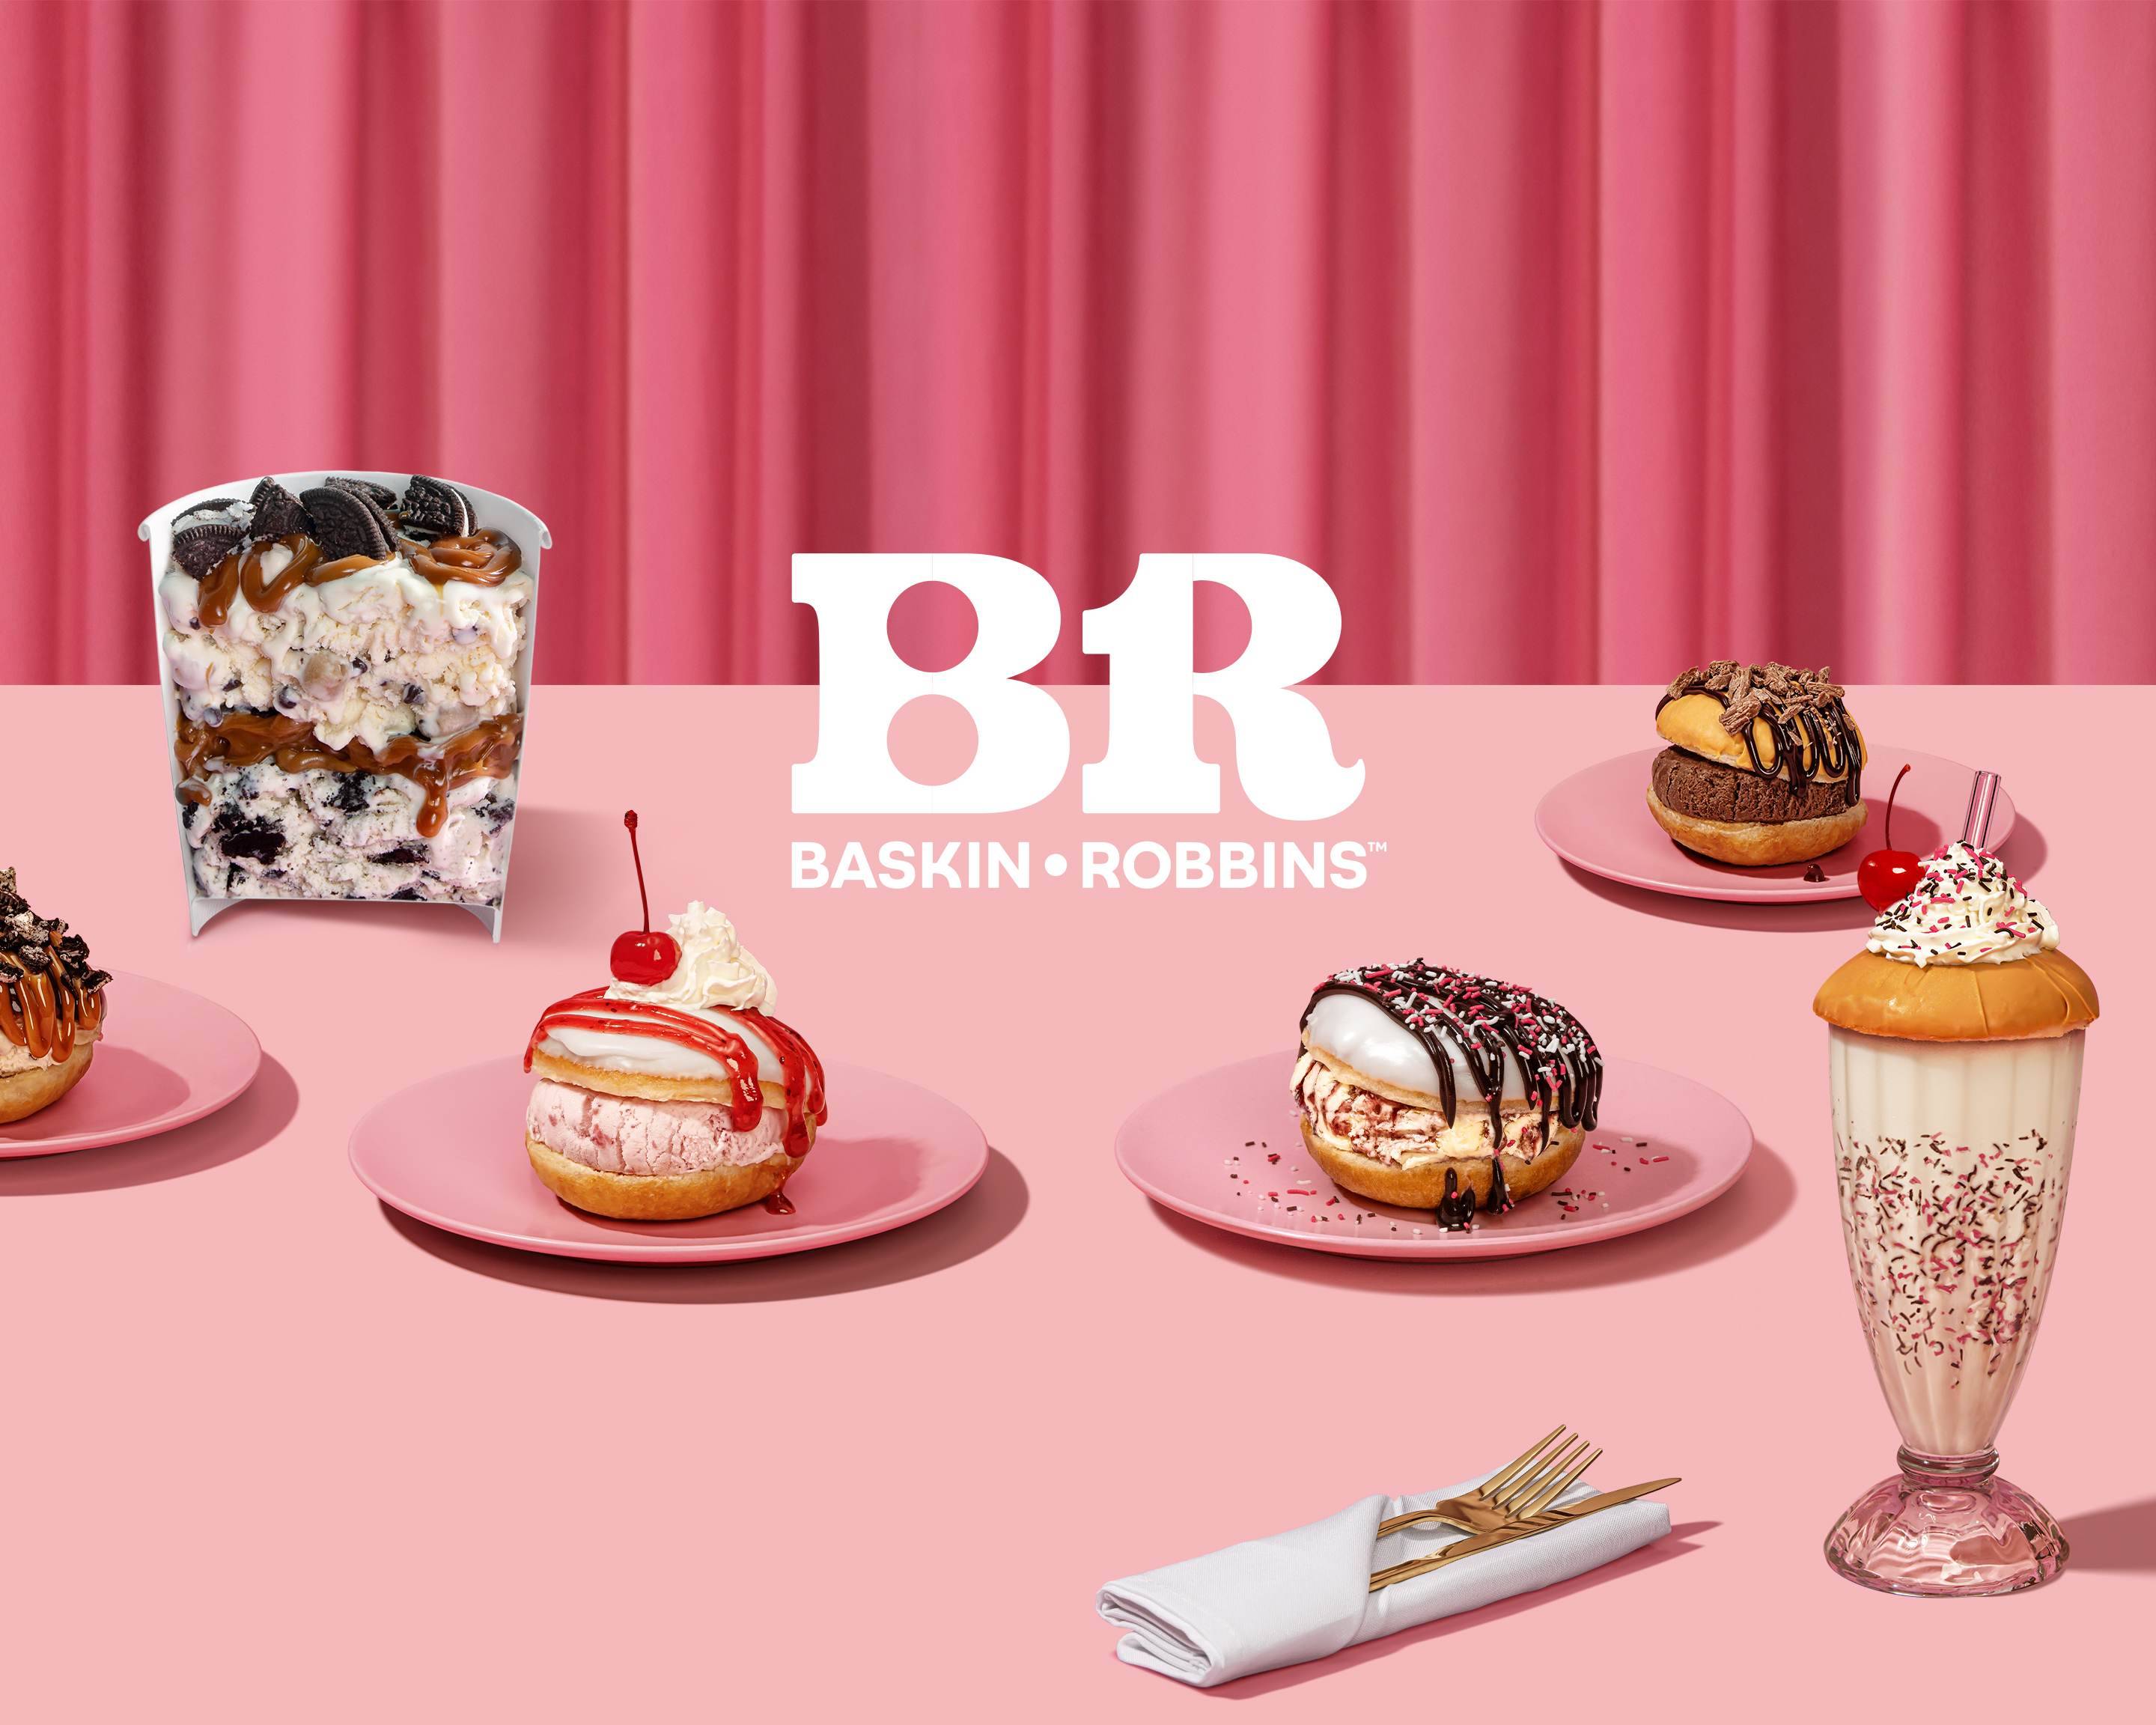 Baskin-Robbins - Got a celebration? We've got a cake for... | Facebook